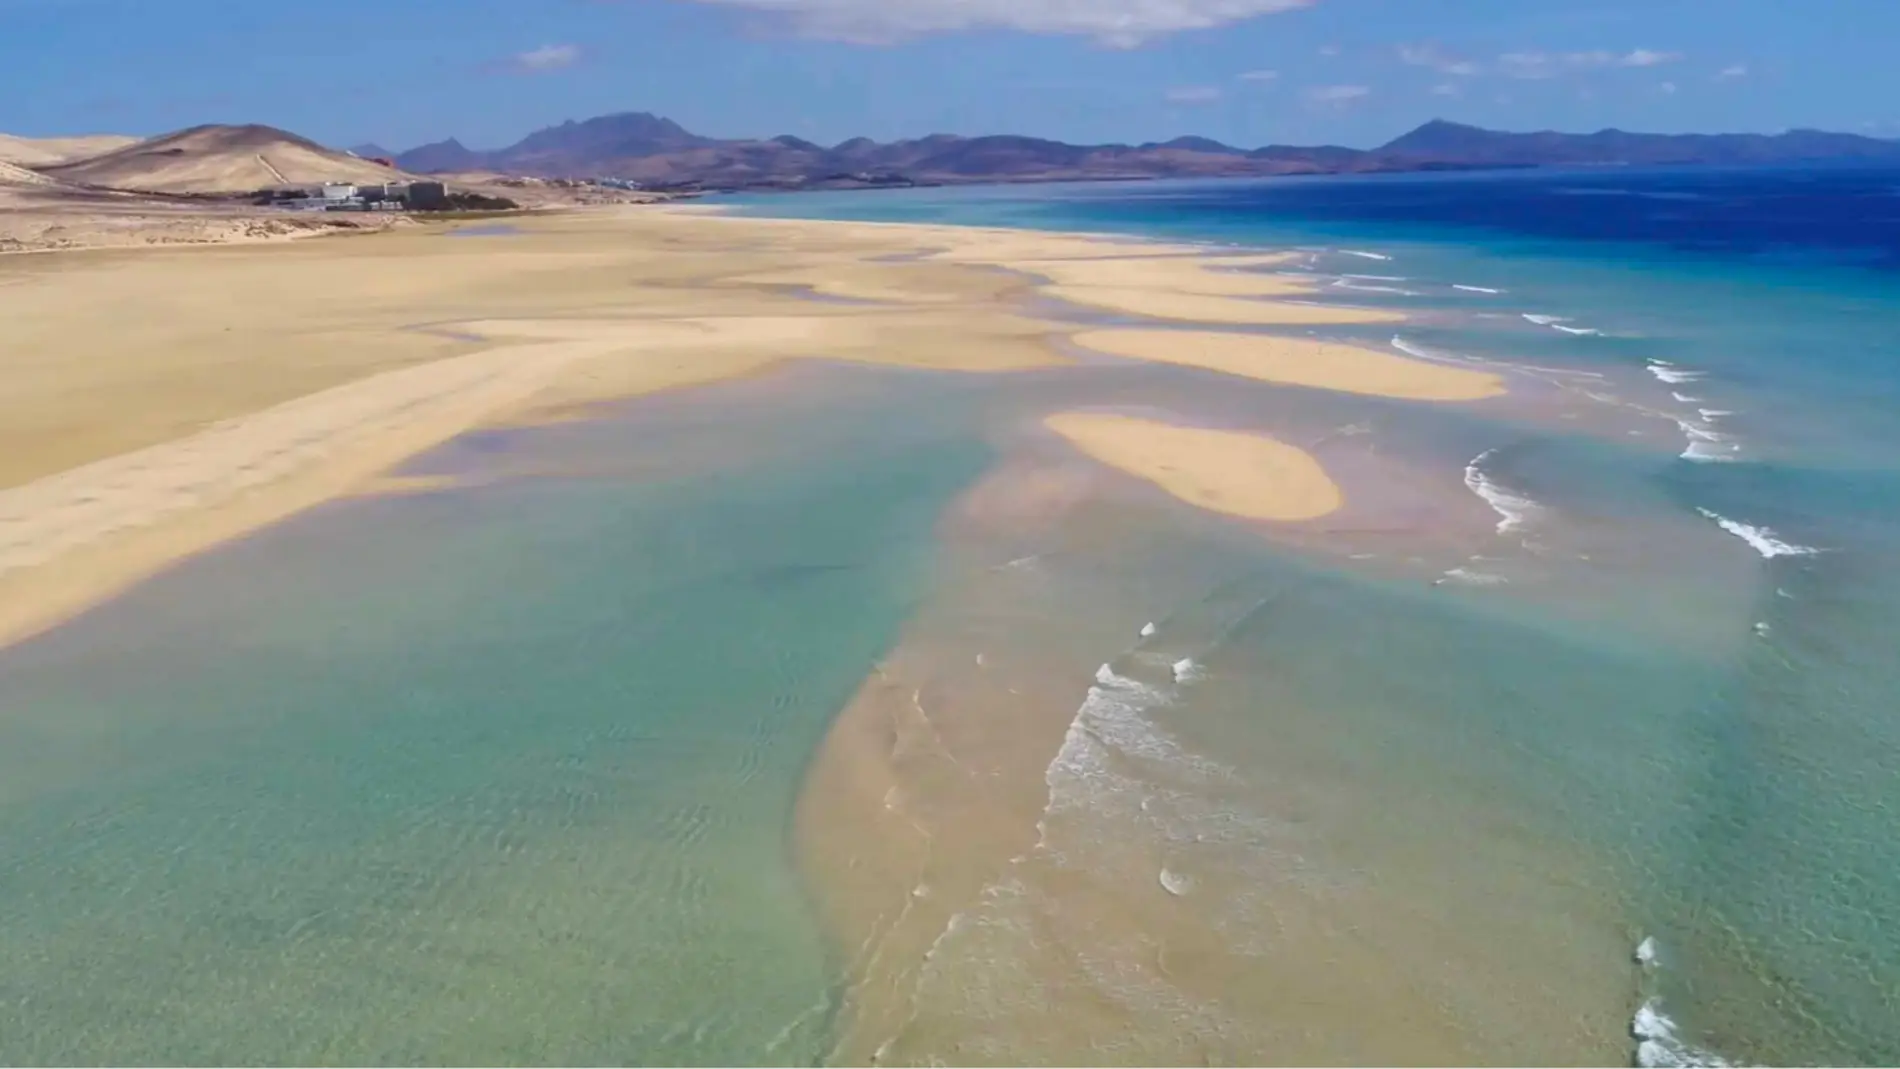 La paradisíaca playa española en la que se forman dos orillas